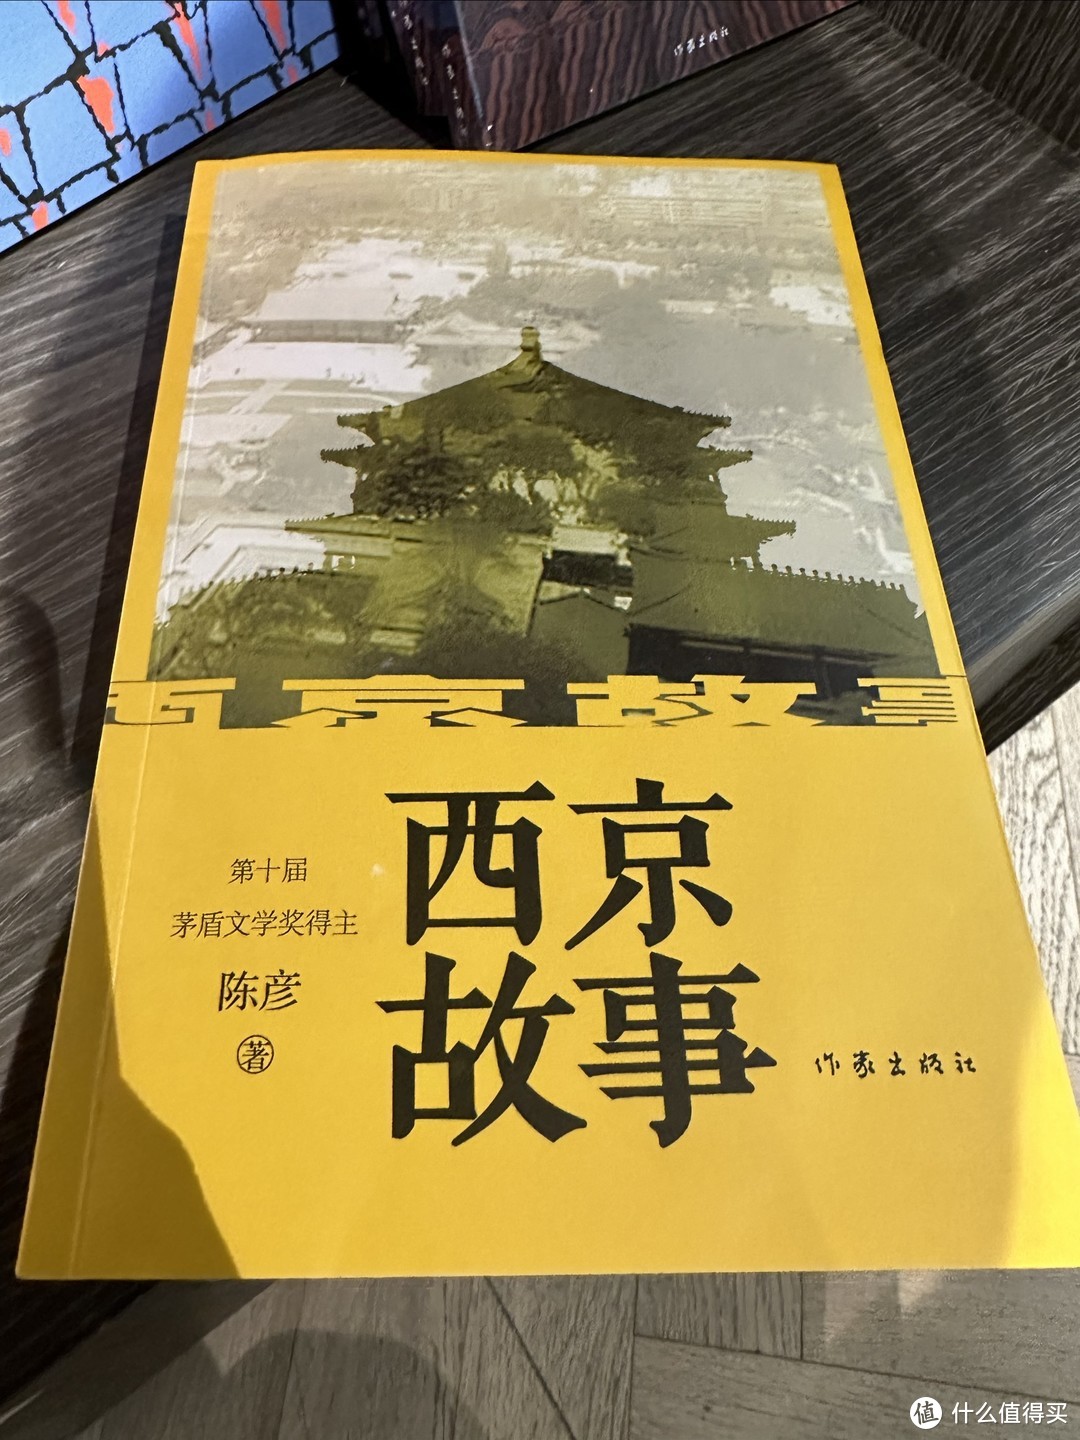 【西京故事读后感】快来看看我读完《西京故事》后的心情吧！🎉